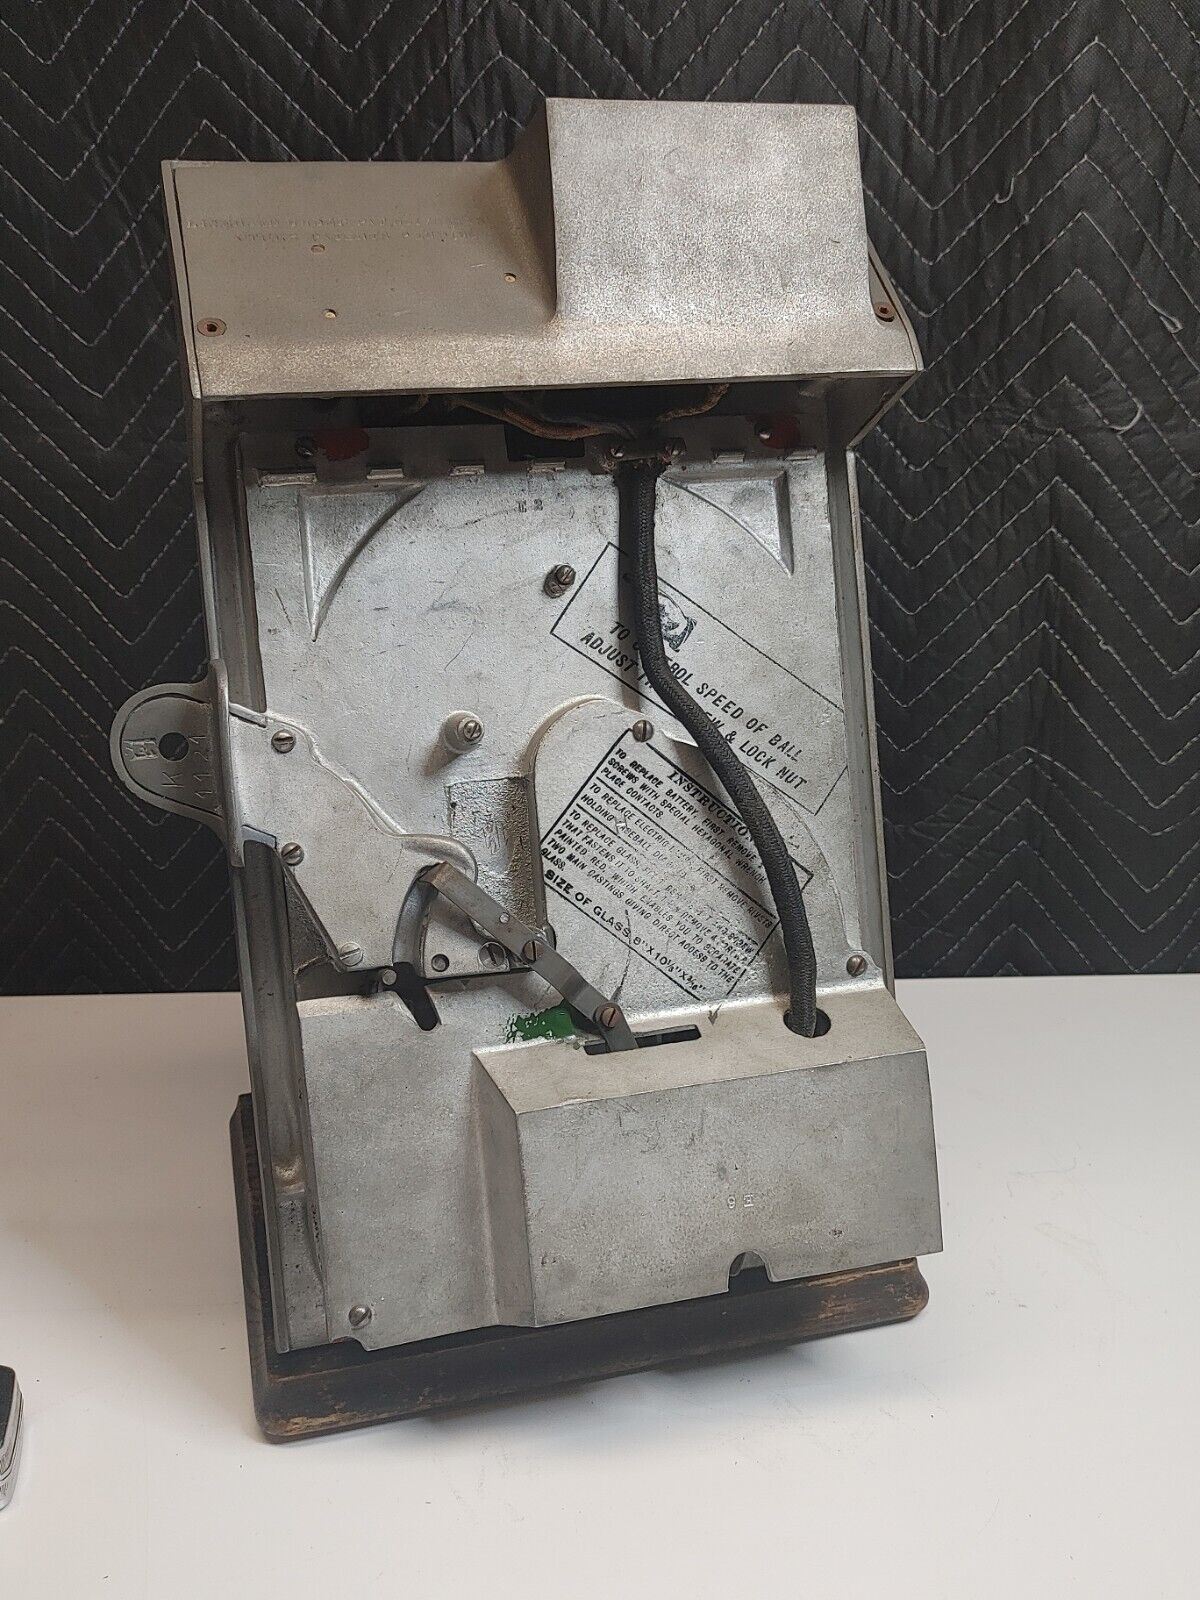 Miniature Electric Baseball World Champion Trade Stimulator by PEO